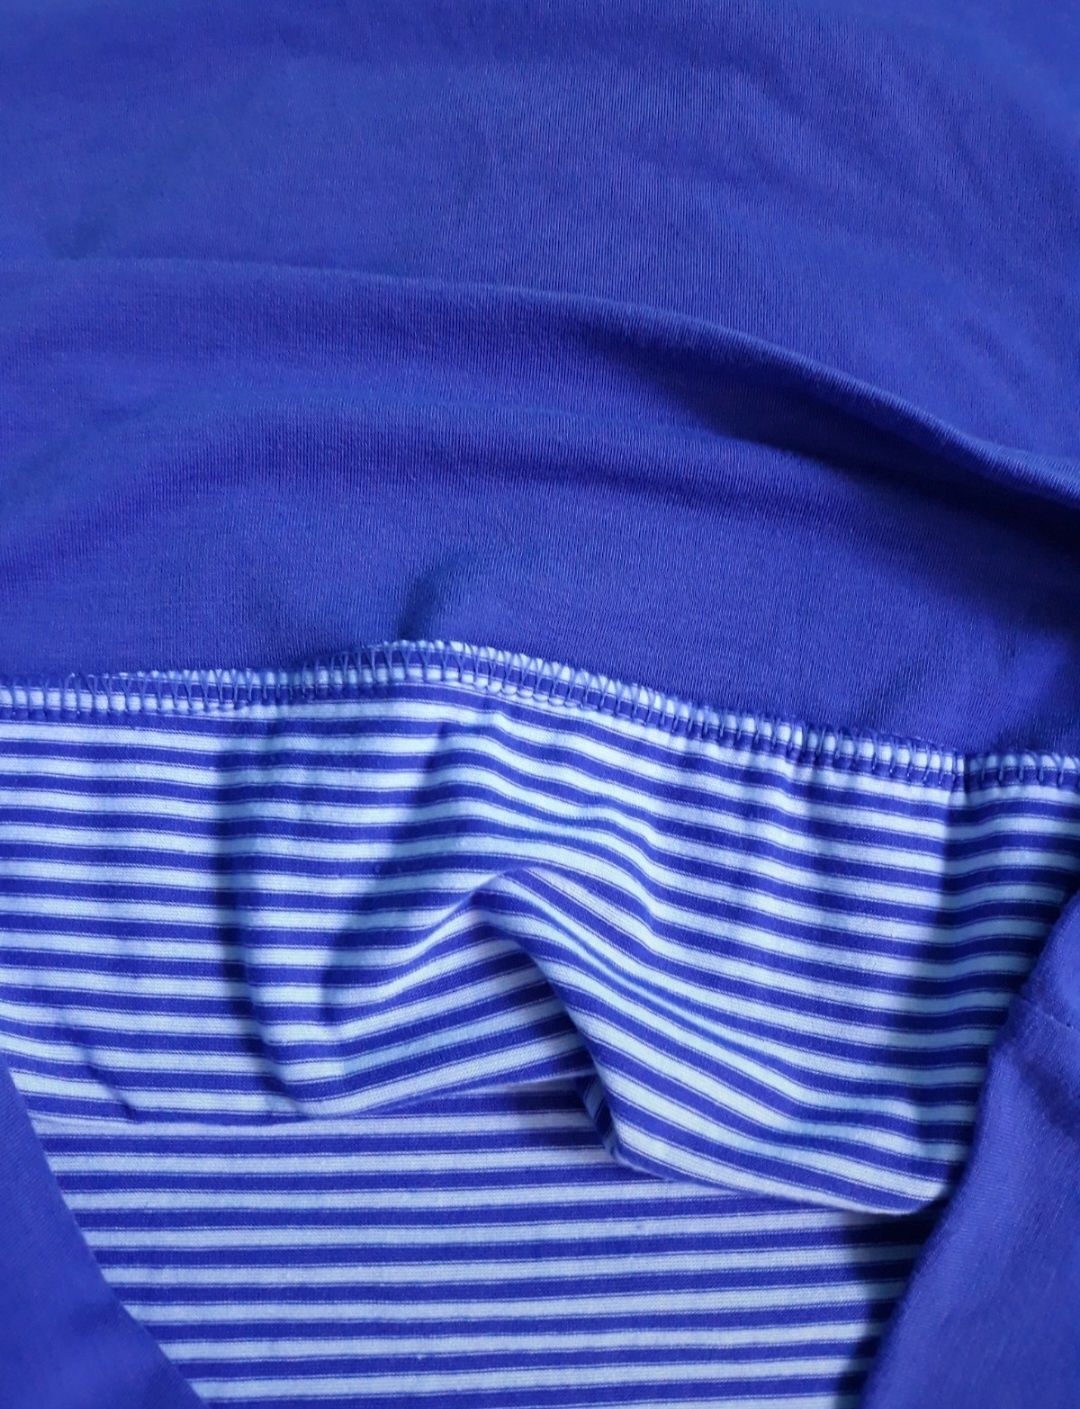 Śliczna niebieska bluzka t-shirt w białe paski M marynarski styl